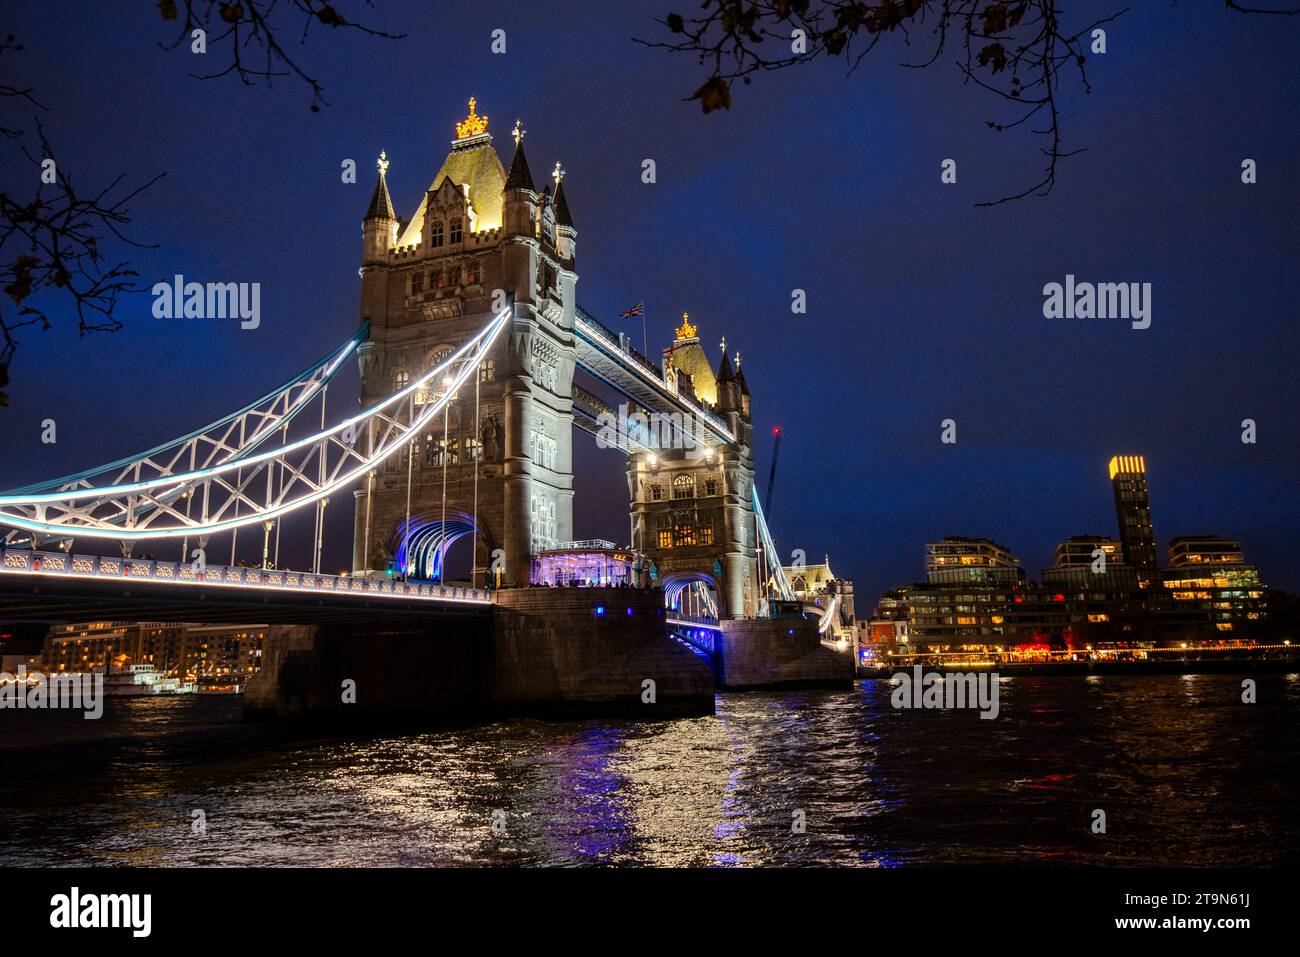 Tower Bridge enjambant la Tamise alors que la nuit arrive un soir de novembre, Londres, Angleterre, Royaume-Uni Banque D'Images